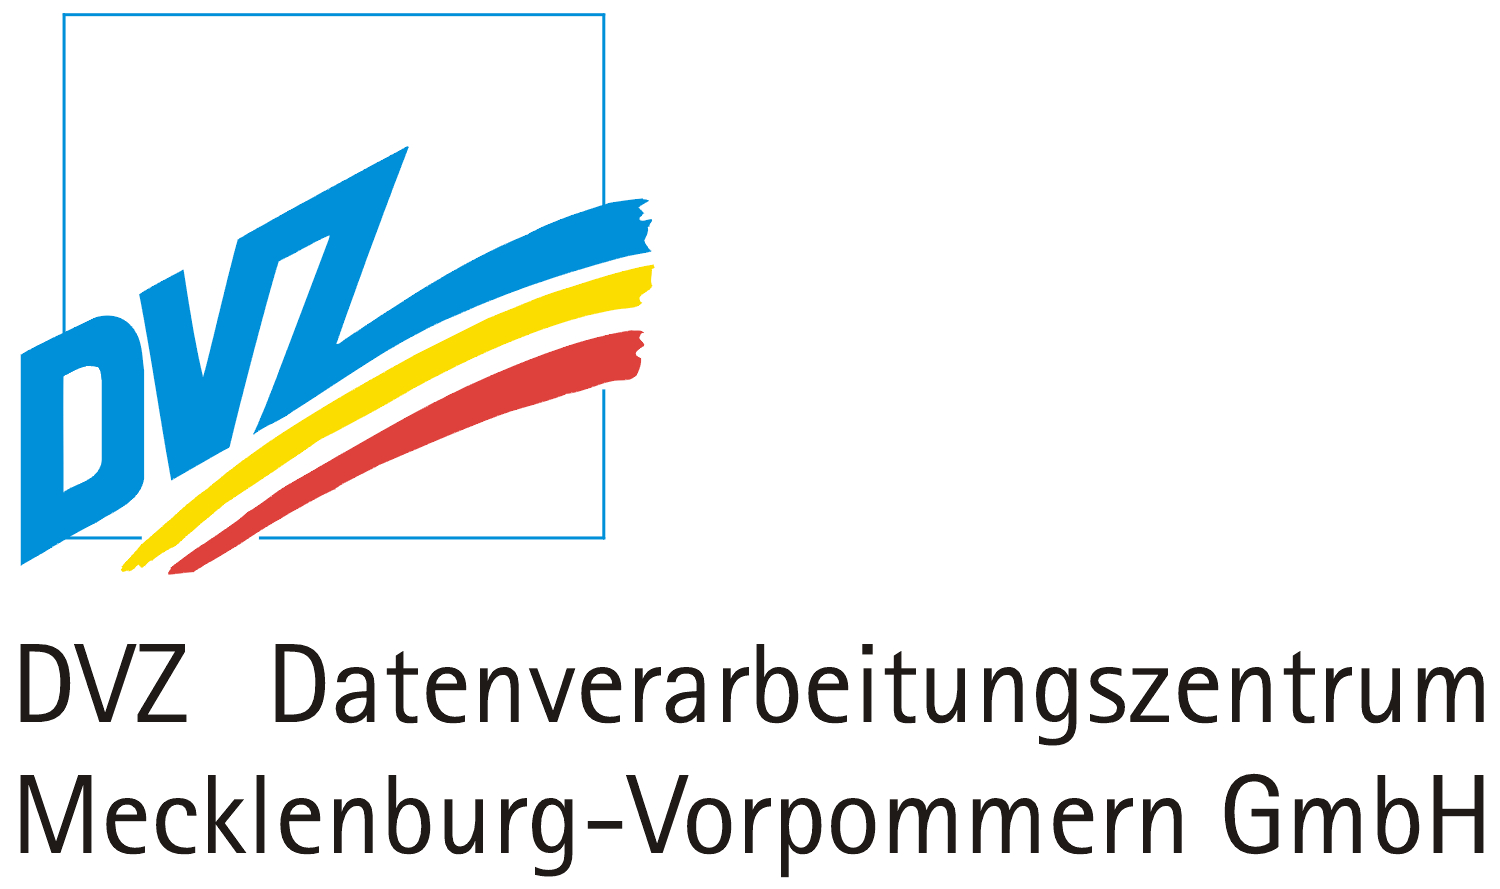 DVZ Datenverarbeitungszentrum Mecklenburg-Vorpommern GmbH icon